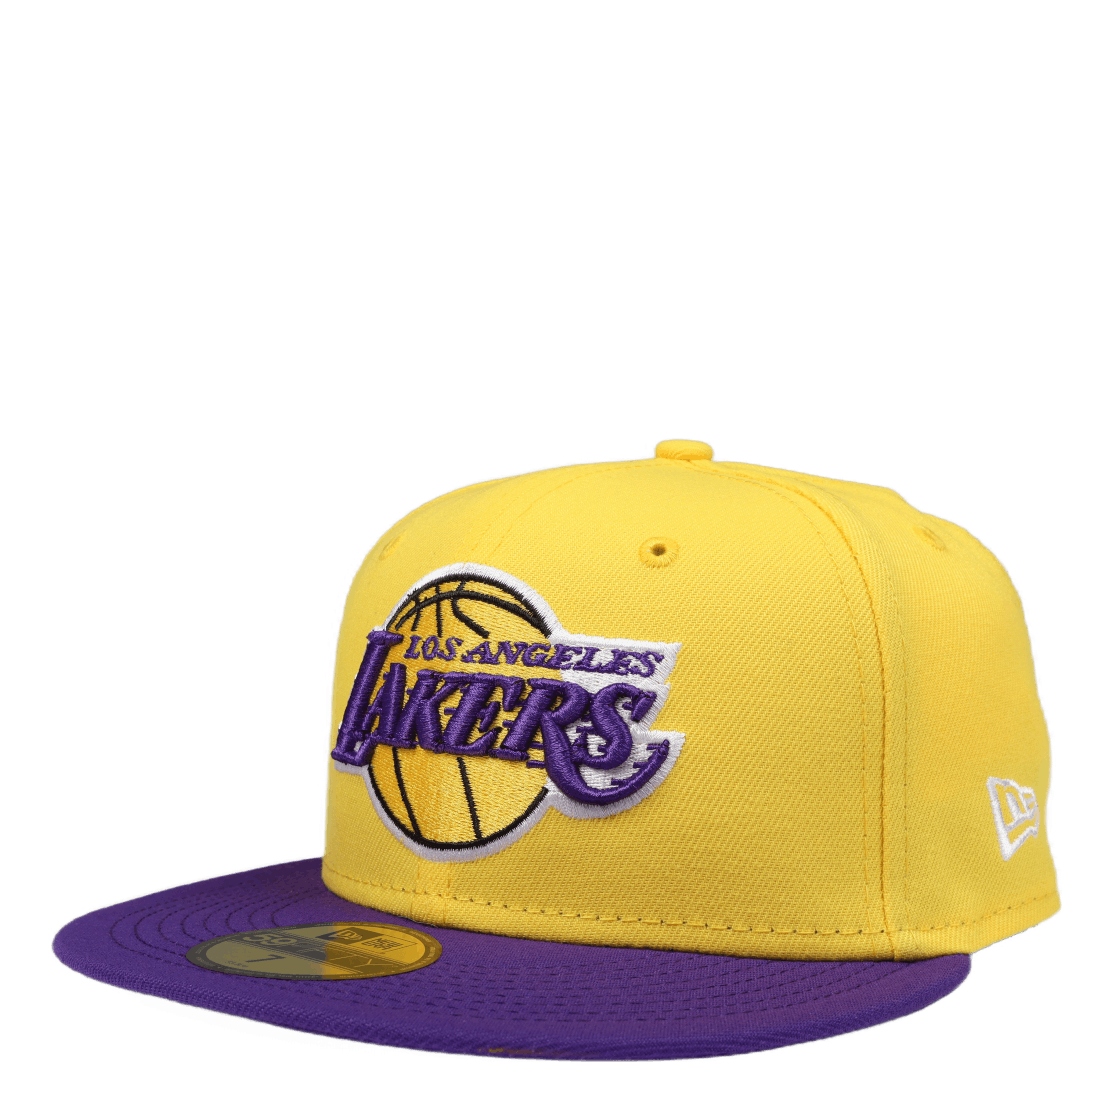 Nba Basic Lakers Yellow/purple Yellow